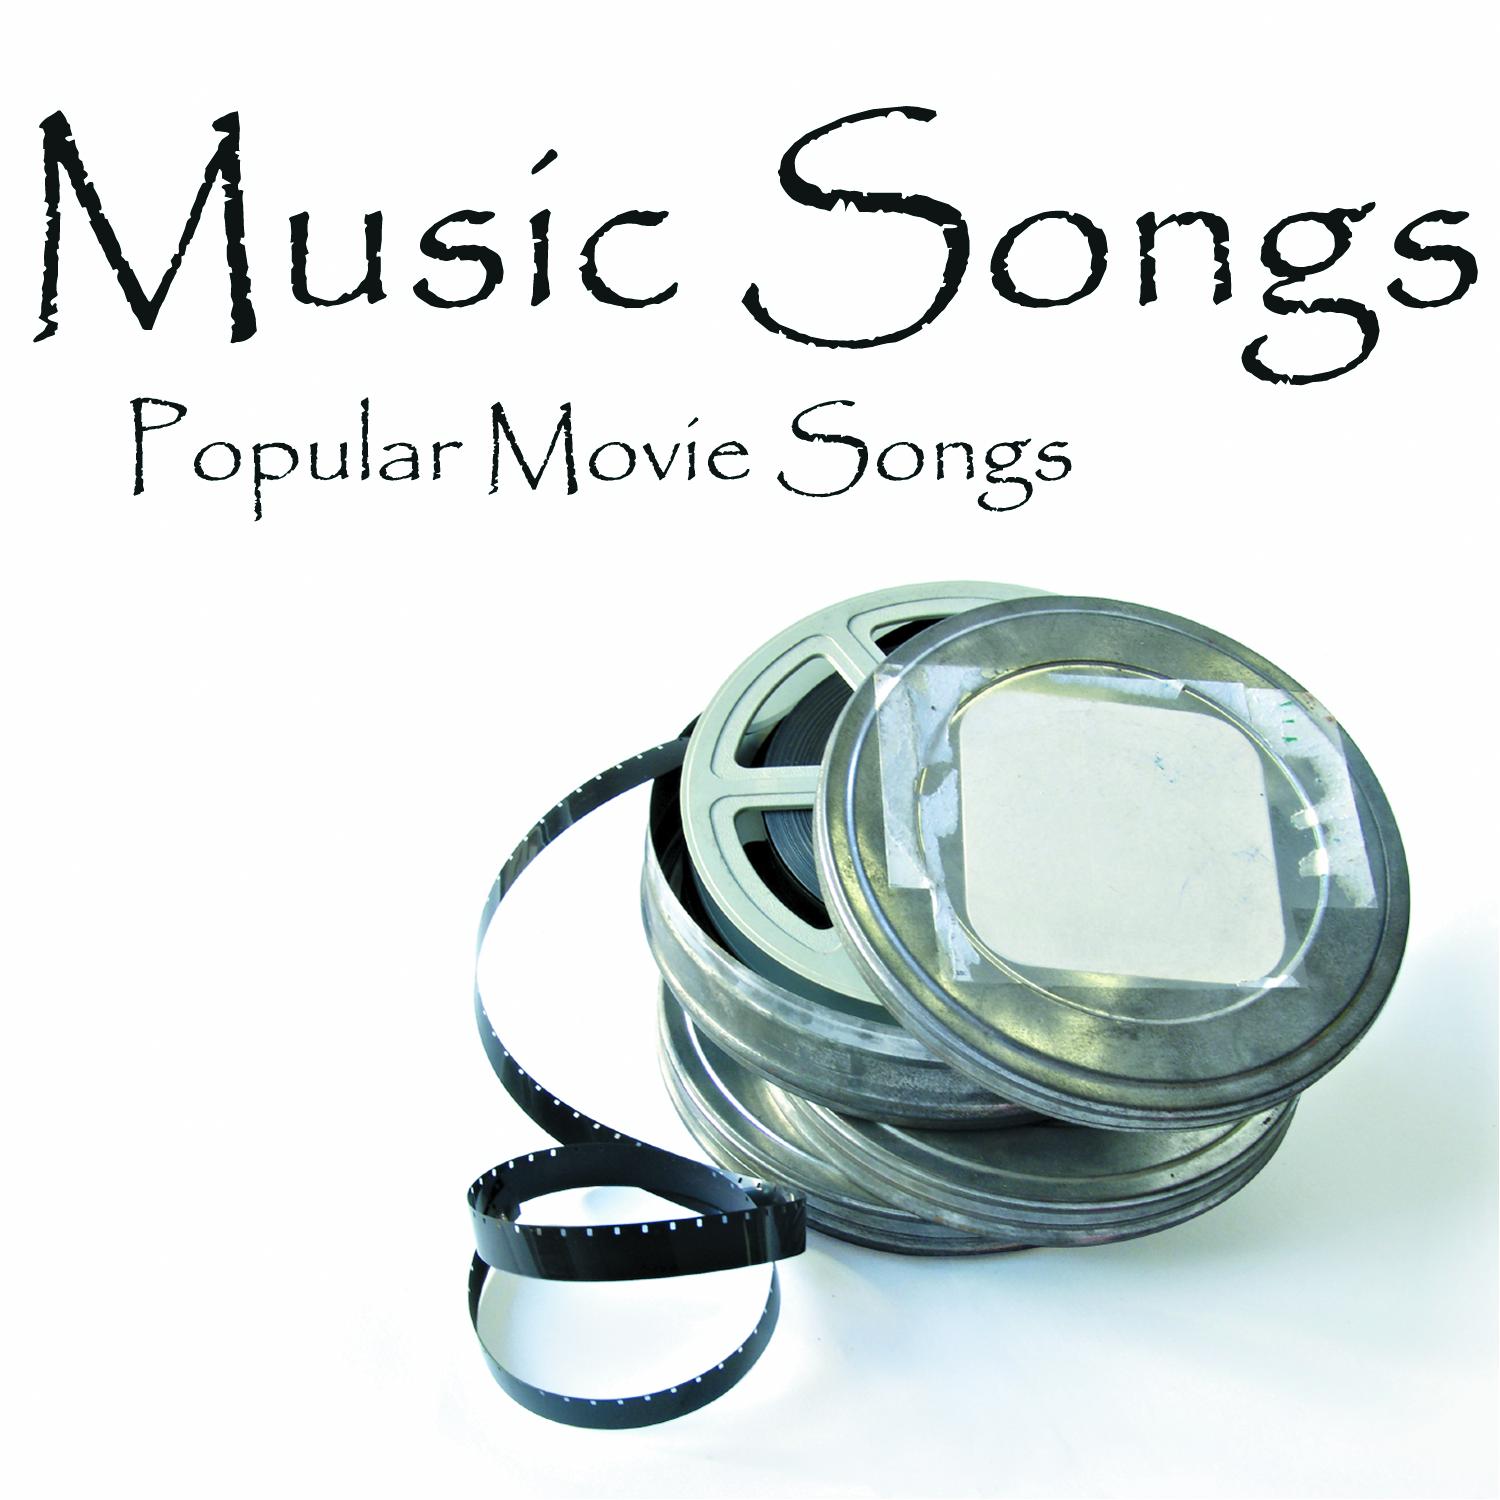 Music Songs - Popular Movie Songs